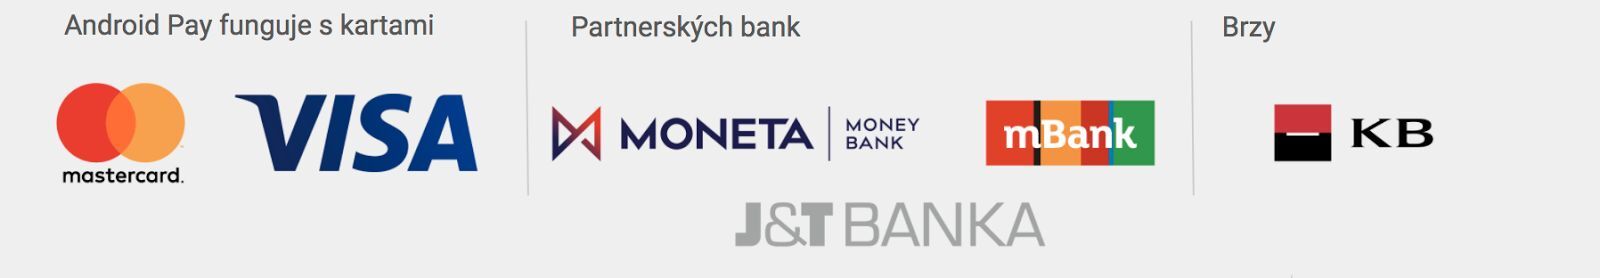 Banky podporující Android Pay